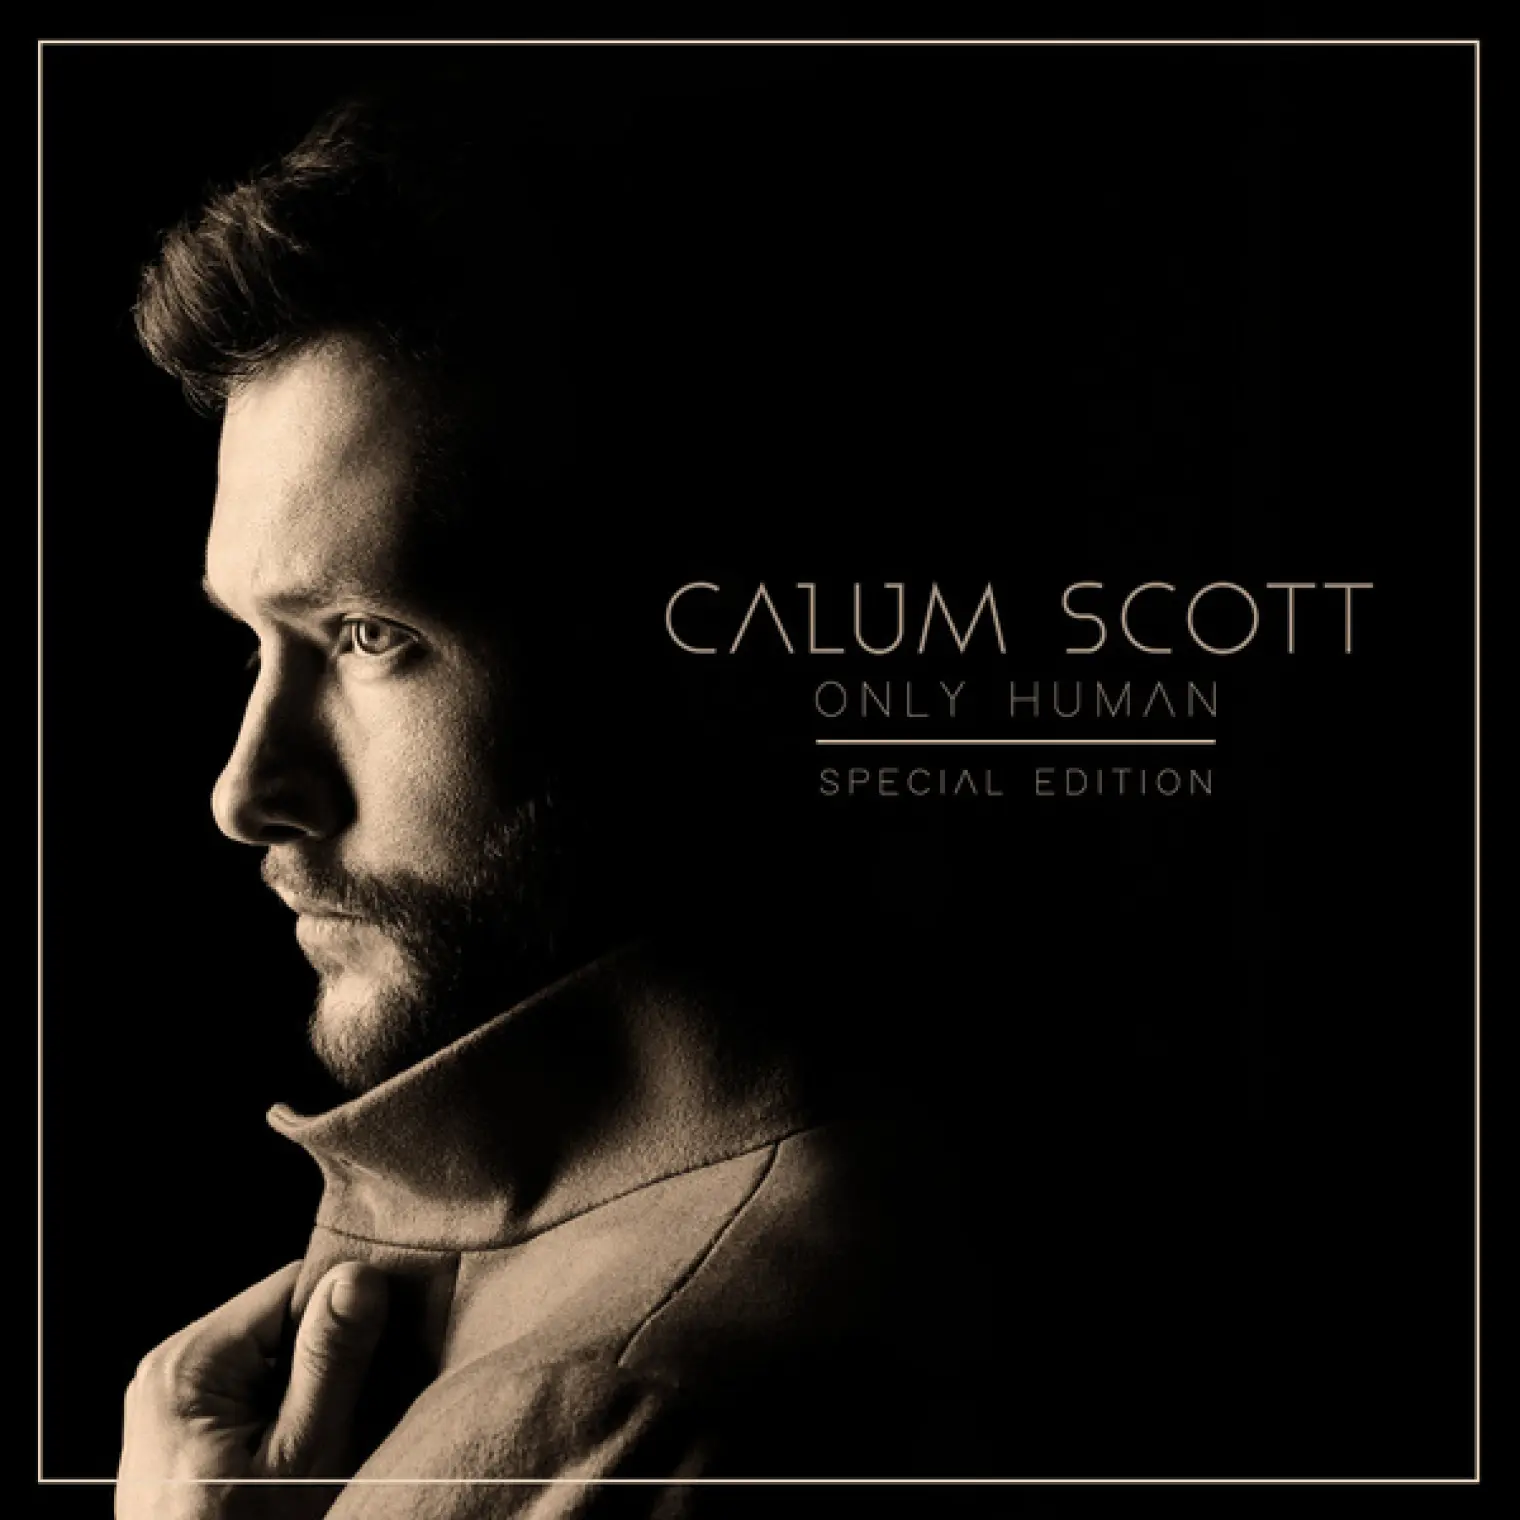 Only Human -  Calum Scott 